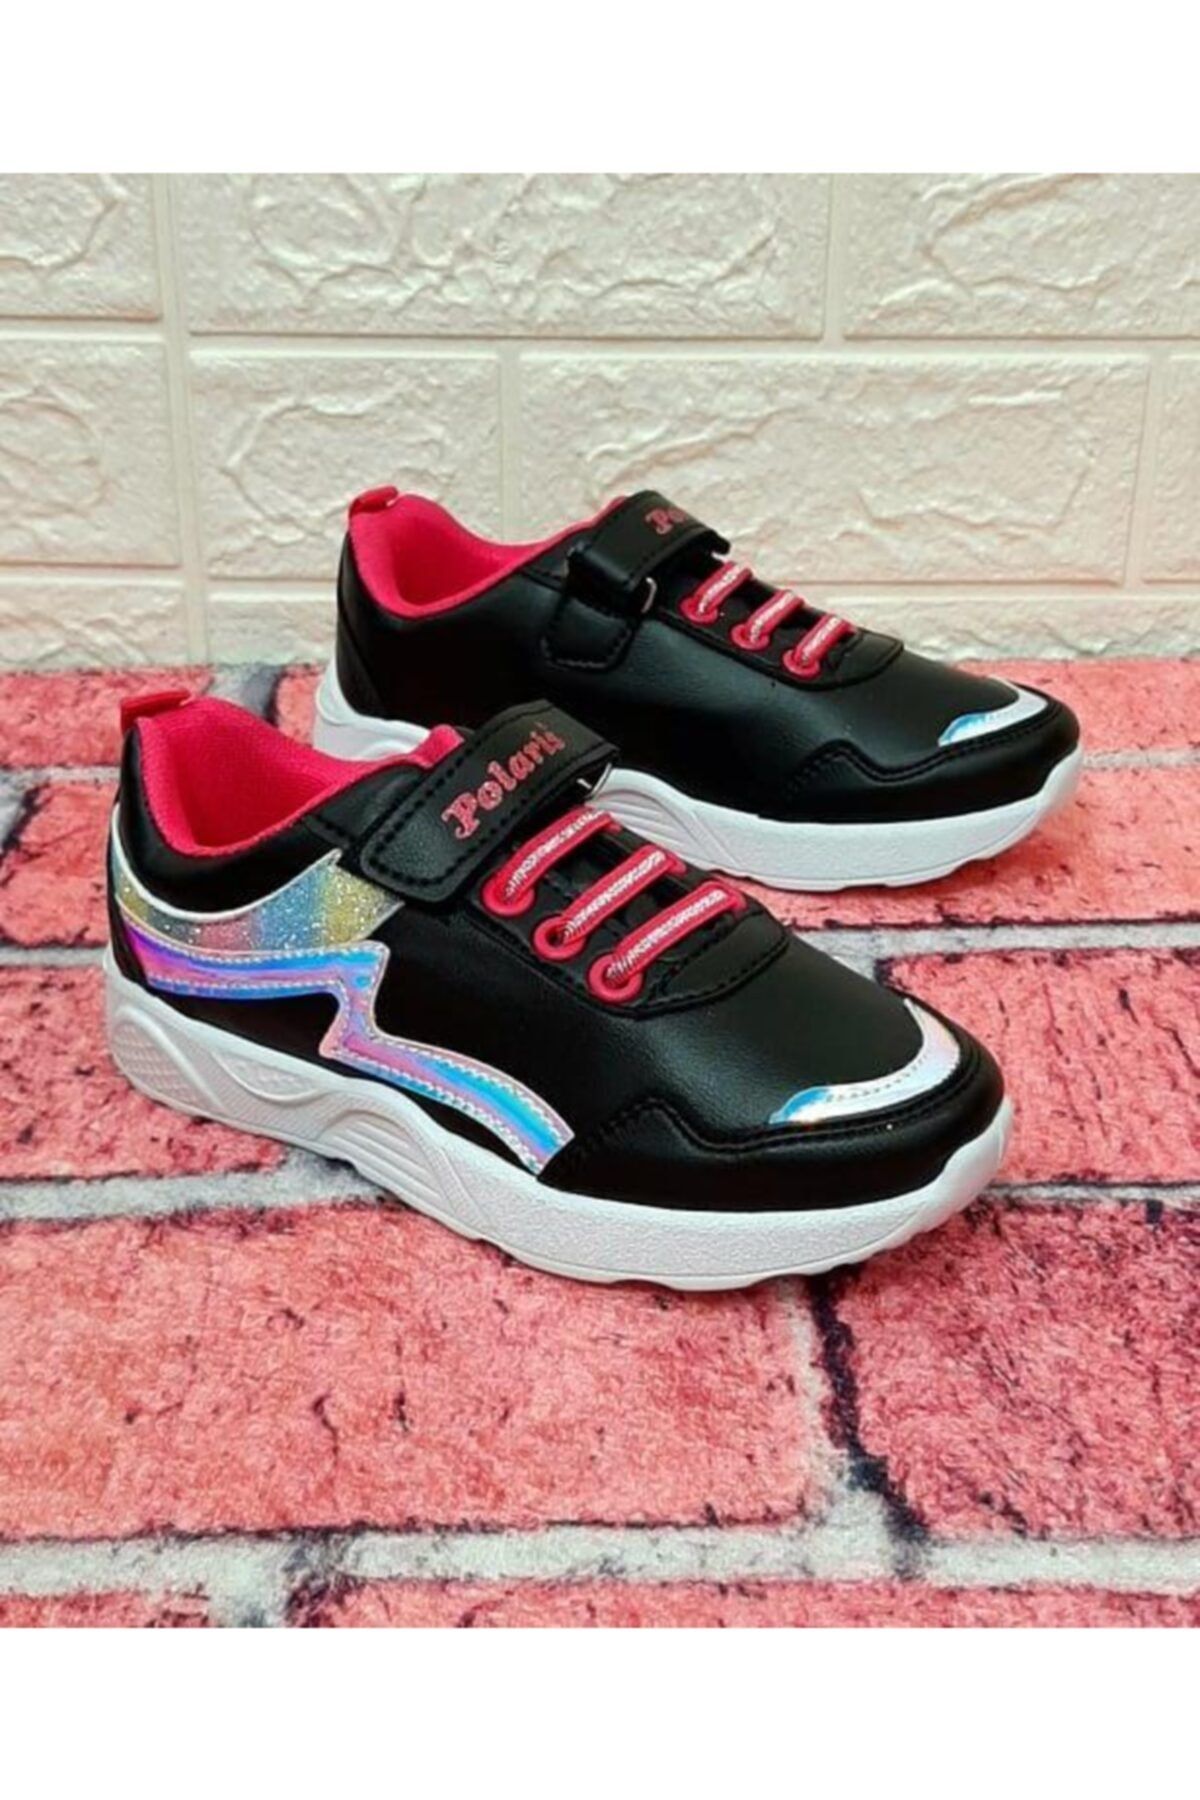 Polaris 617369 Siyah Renk Filesiz Cırtlı Kız Çocuk Spor Ayakkabı